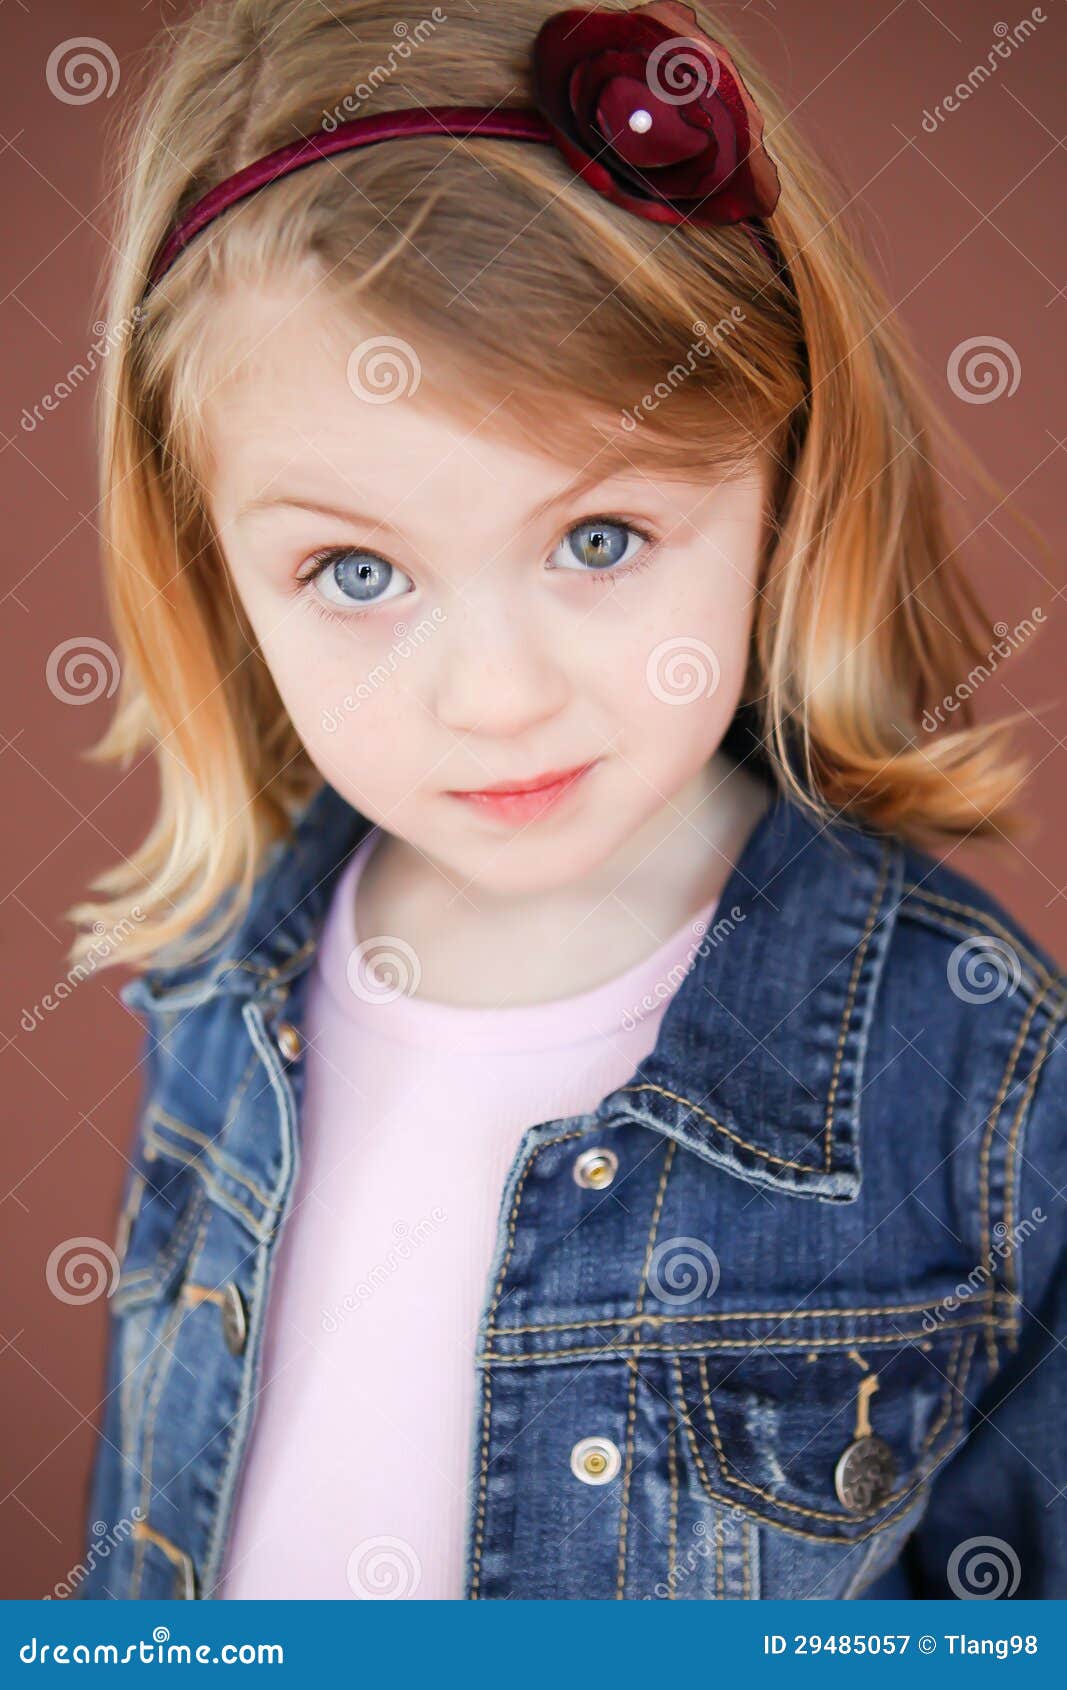 Retrato Da Menina Da Criança De 5 Anos Imagem de Stock - Imagem de